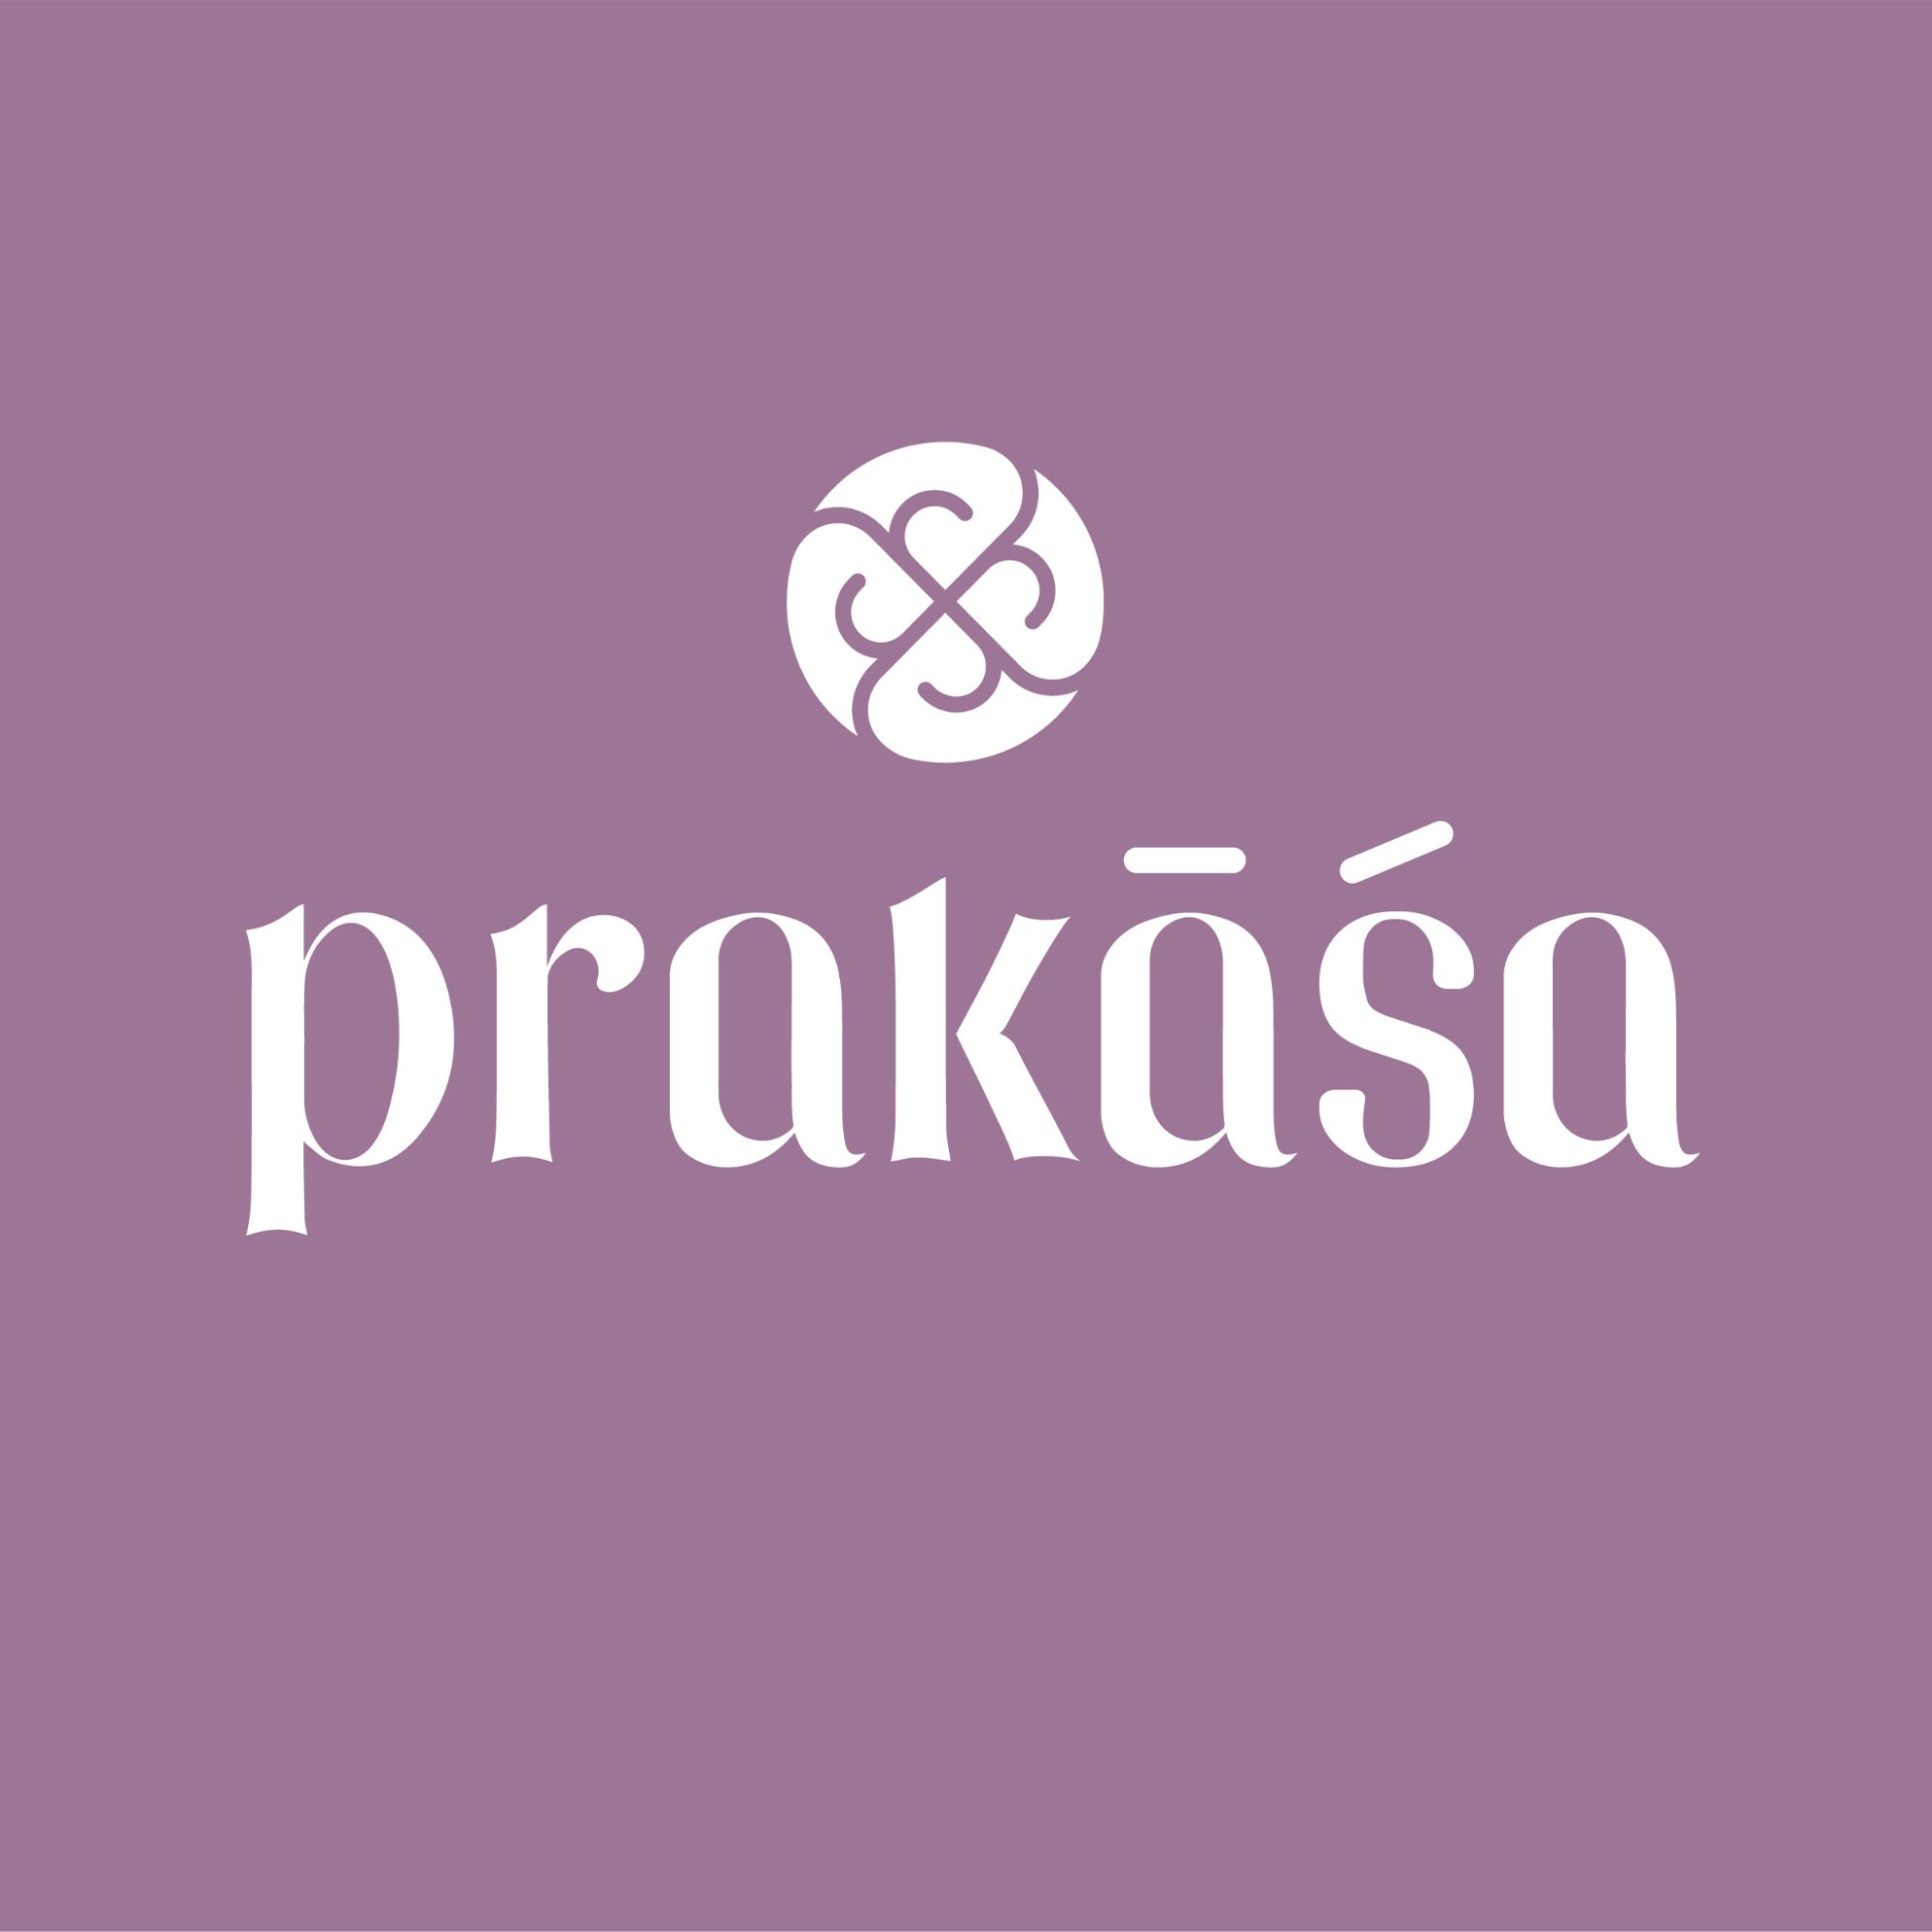 Prakasa Yoga logo